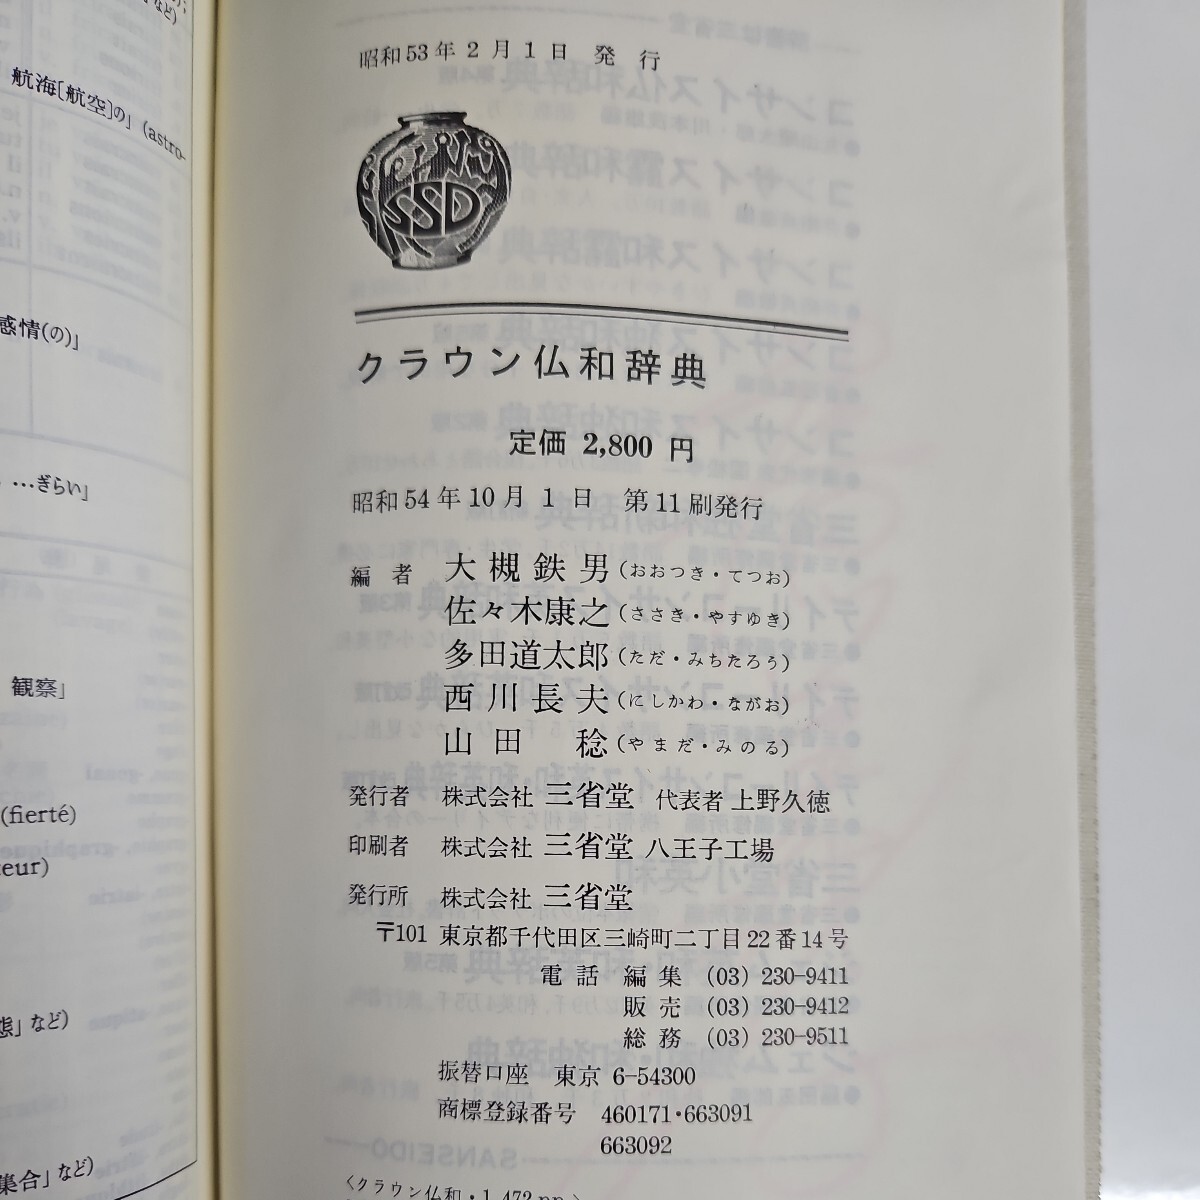 i25-038 DICTIONNAIRE FRANCAIS-JAPONAIS CROWN Crown . мир словарь регистрация название линия скидка число страница есть 